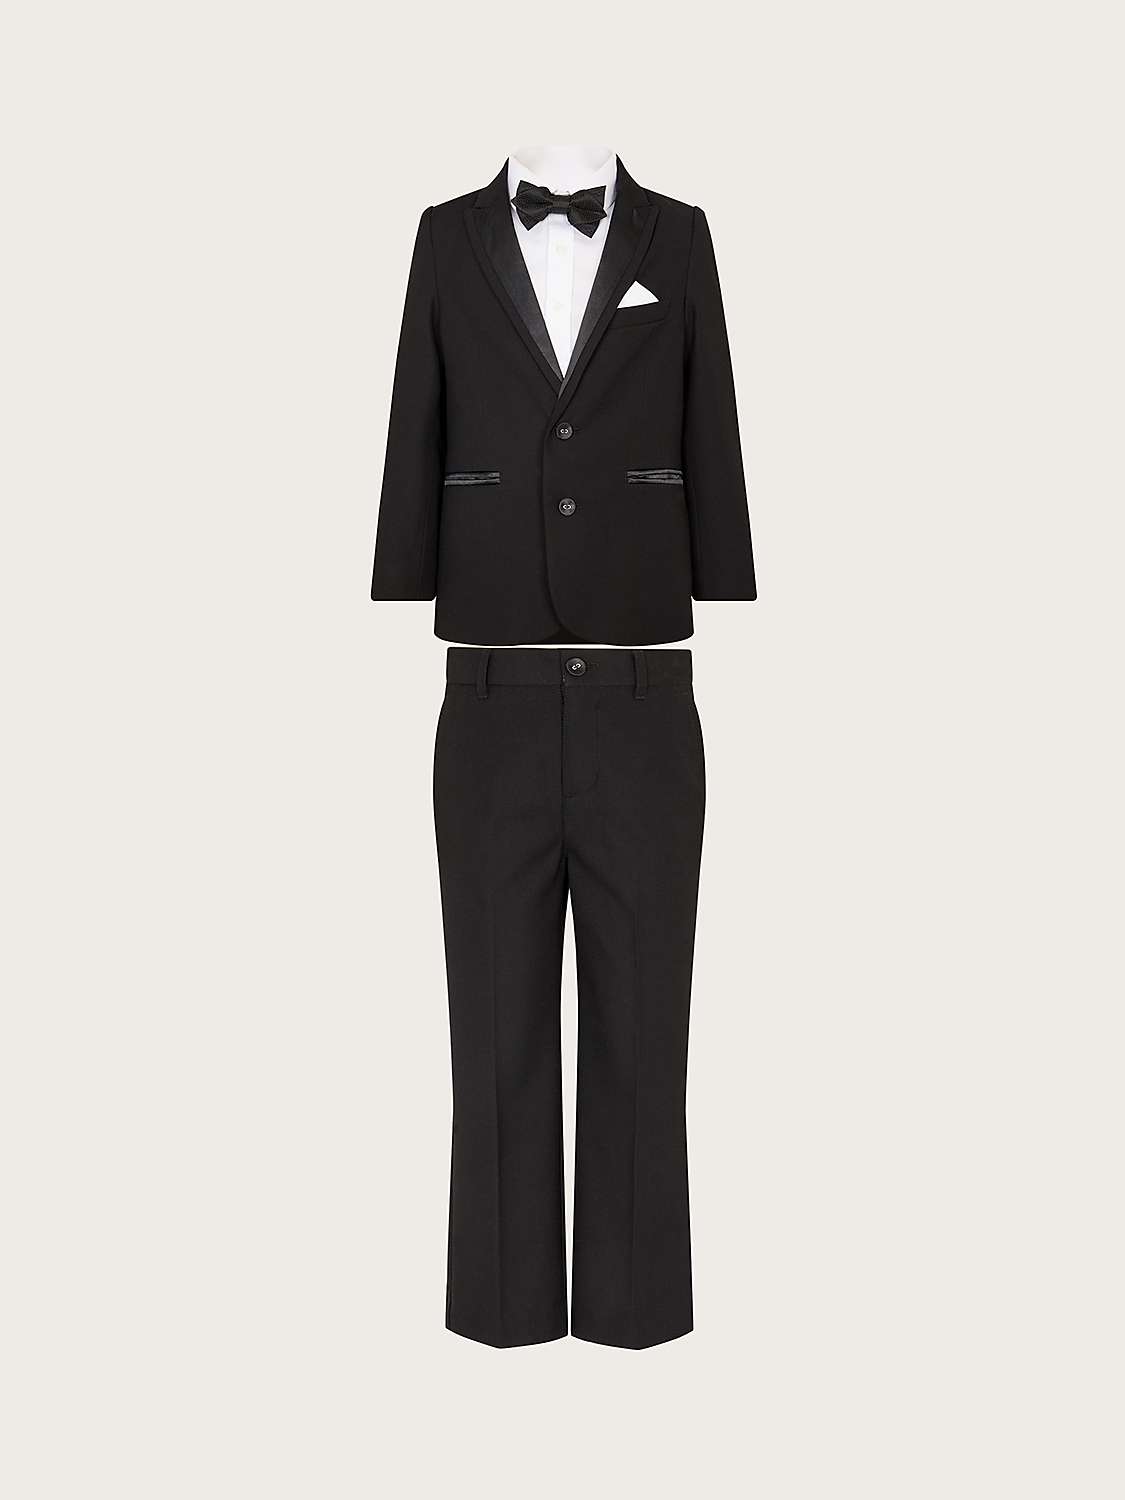 Buy Monsoon Kids' Benjamin Tuxedo 4 Piece Suit, Black Online at johnlewis.com